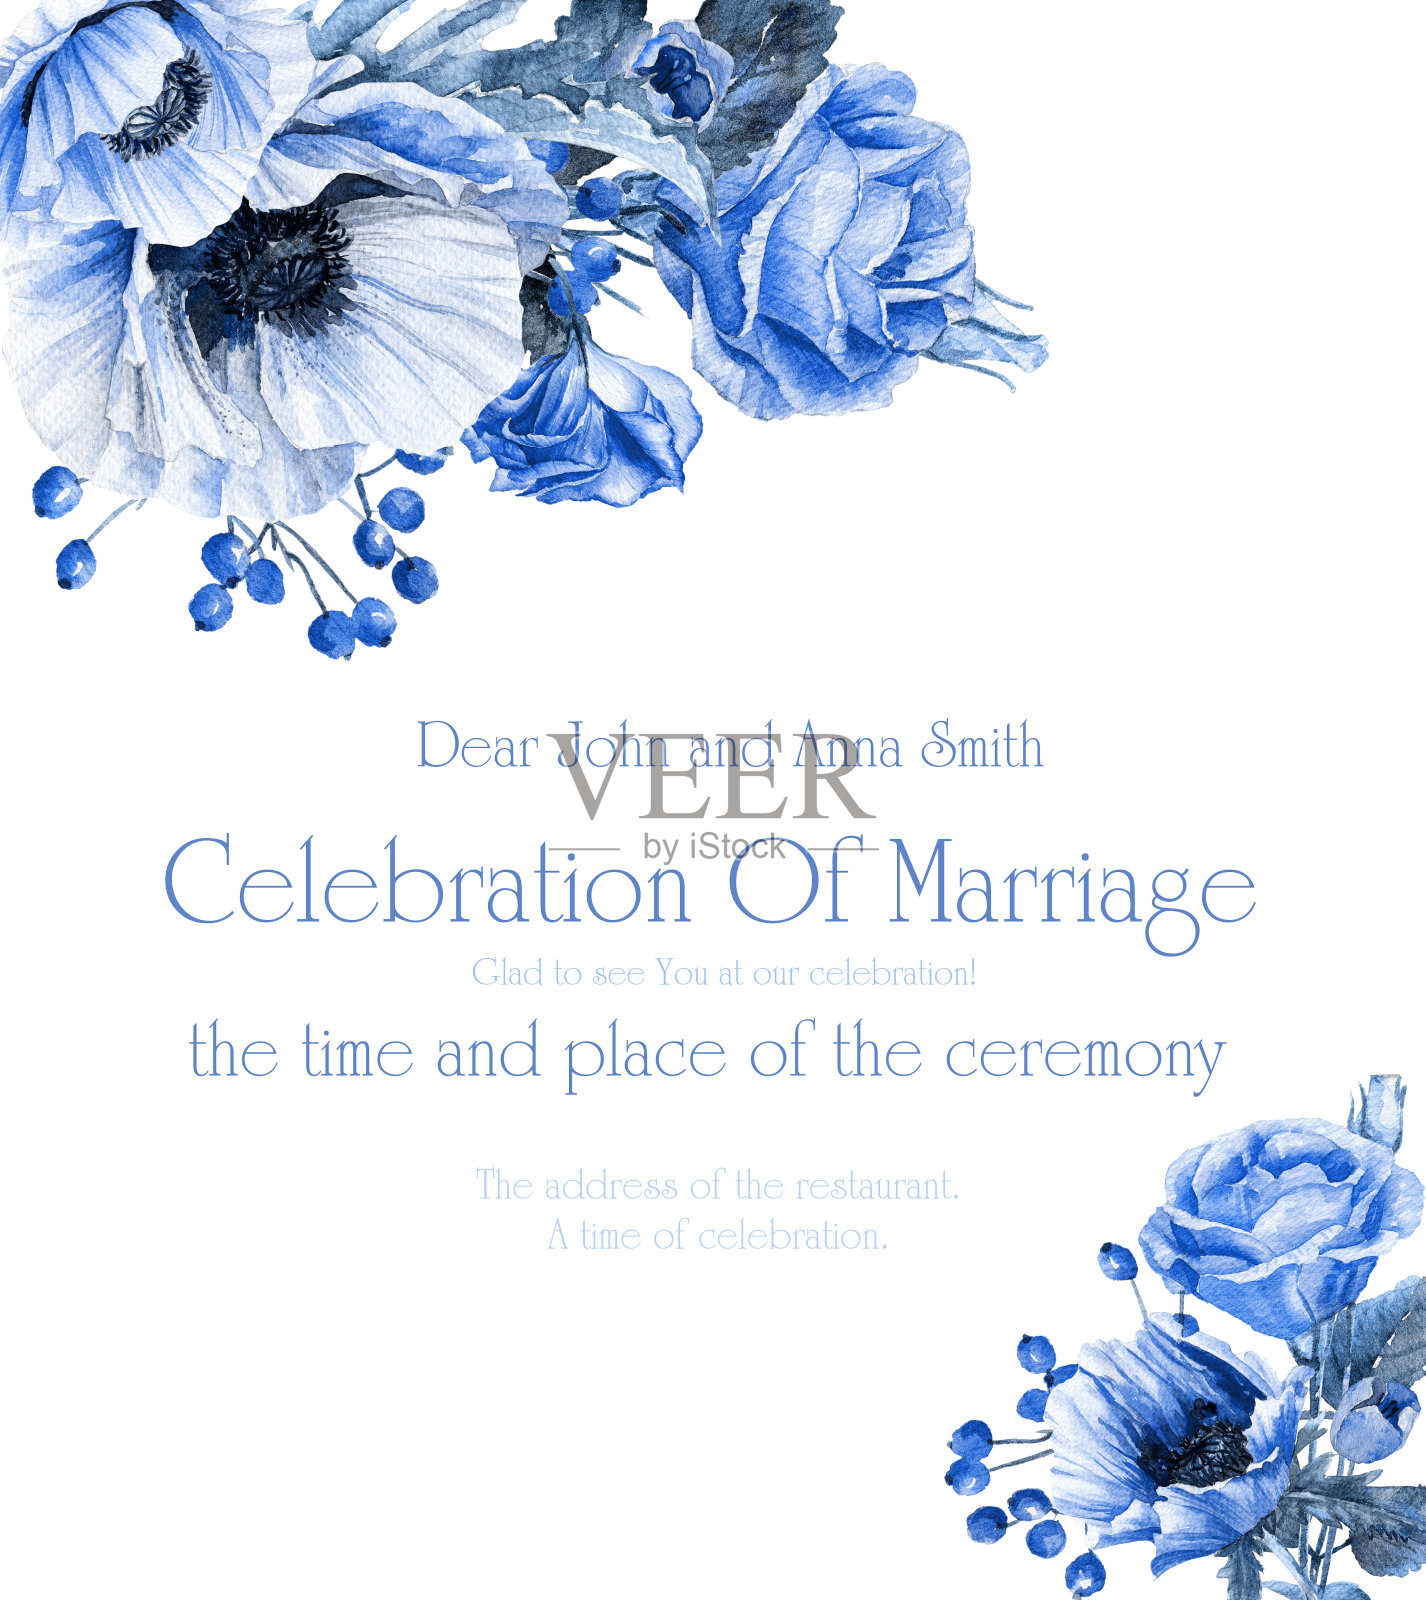 婚礼邀请与蓝色花卉角框架设计模板素材